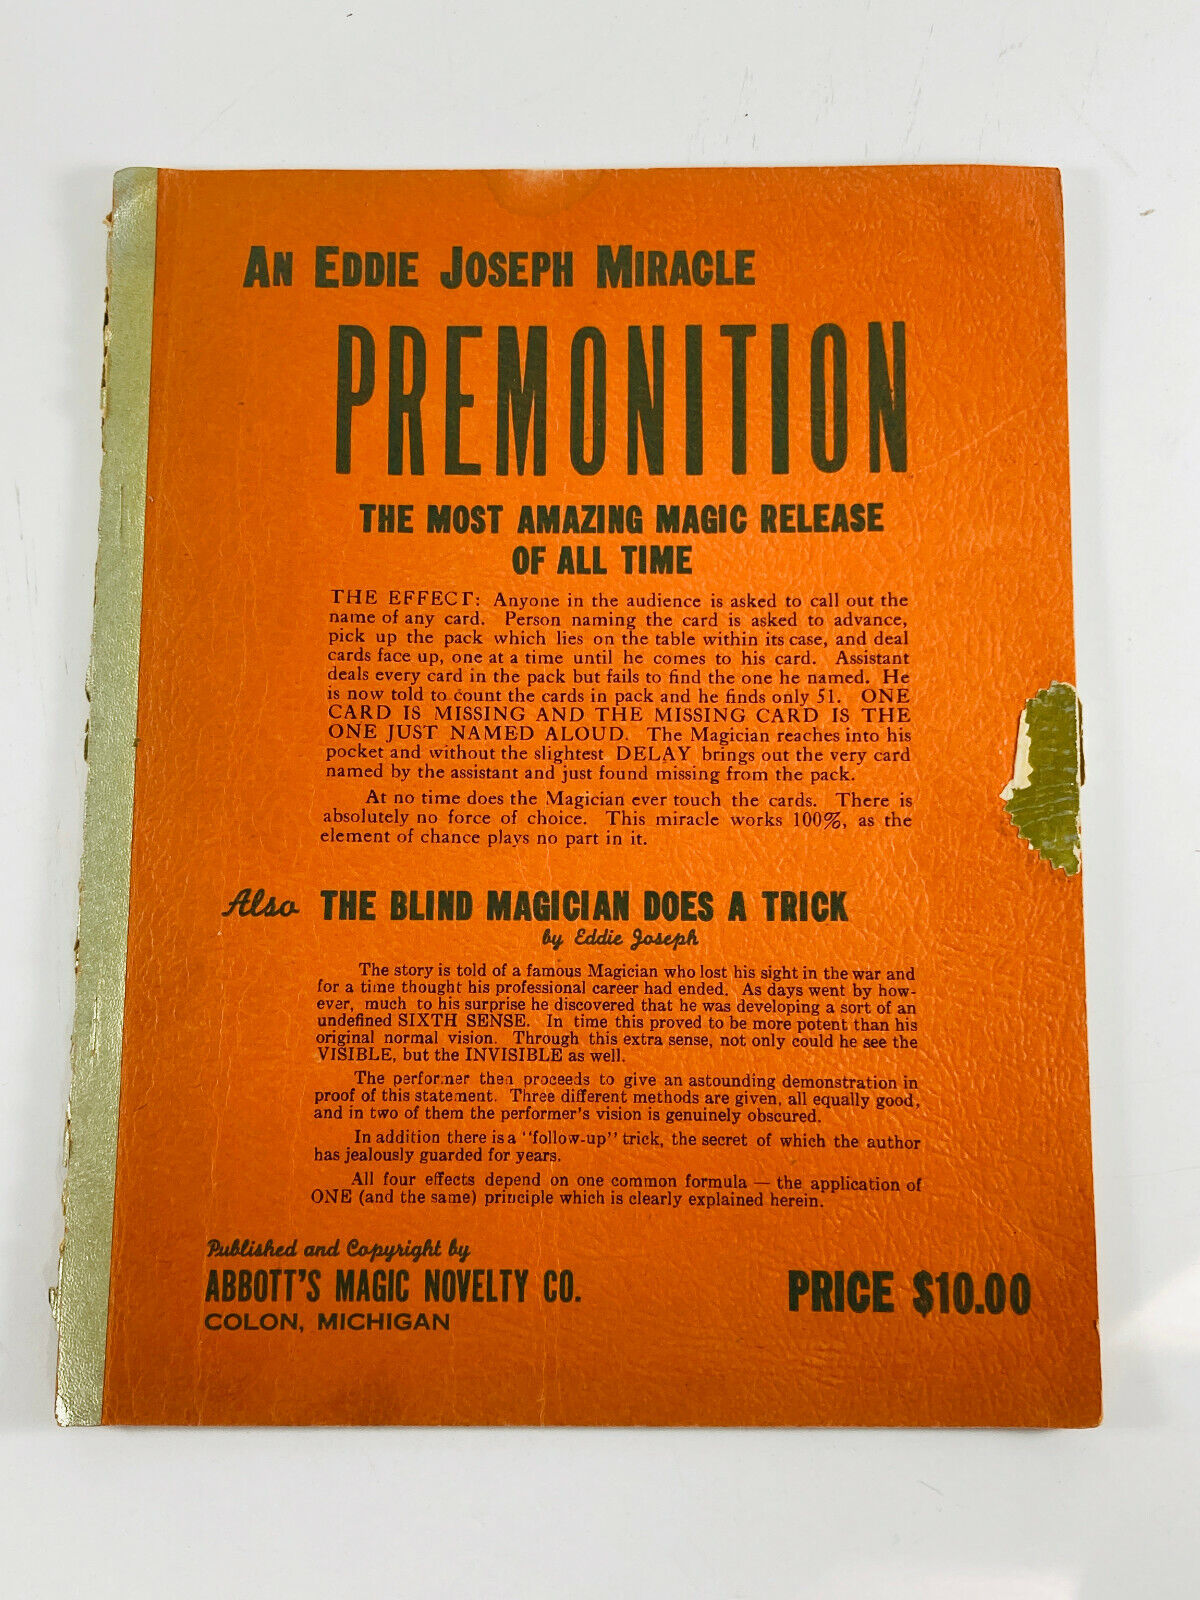 Vintage 1948 Magic Book PREMONITION Abbott's by Eddie Joseph